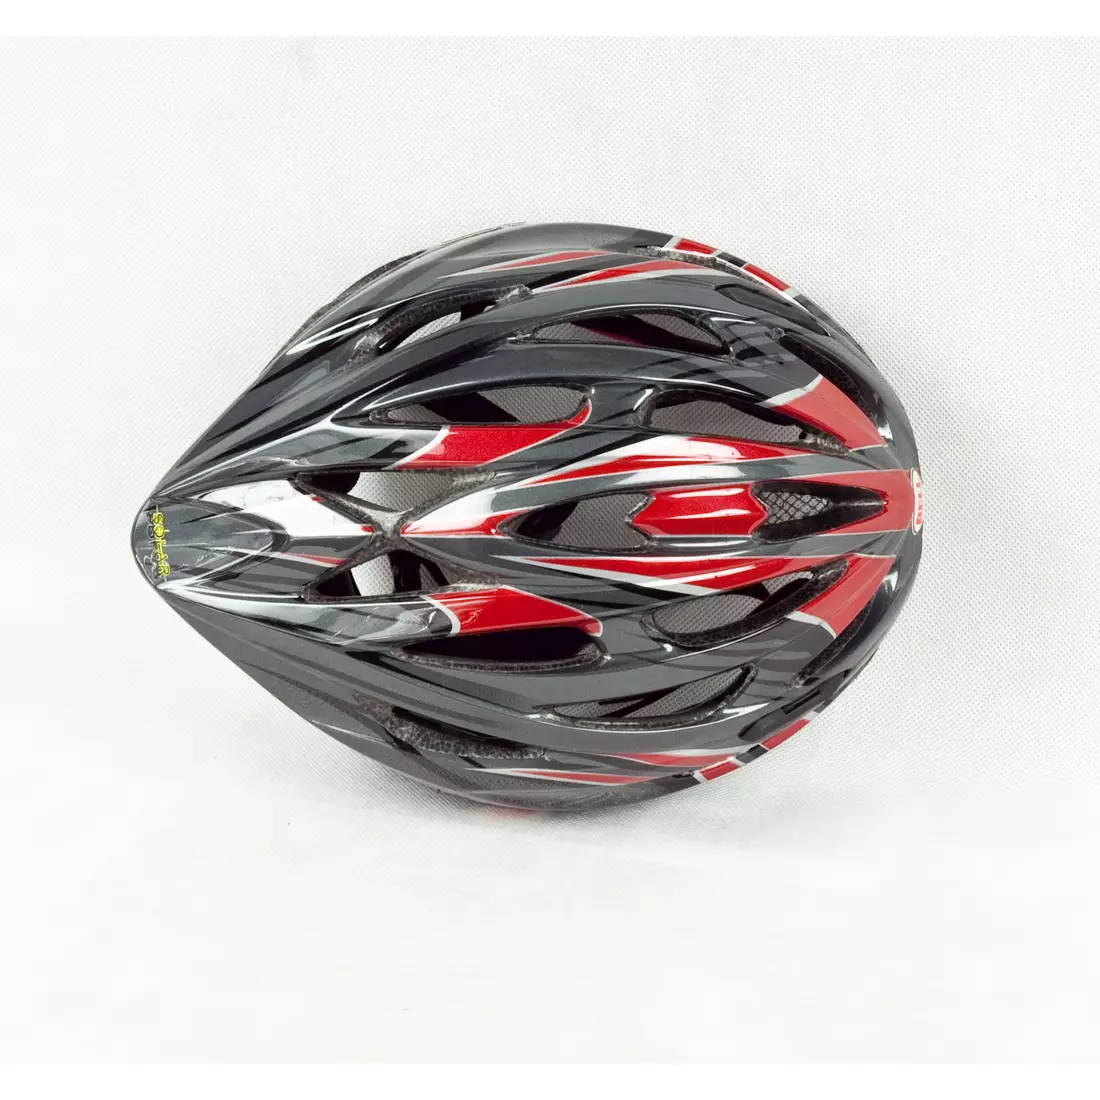 BELL SOLAR - cyklistická přilba, černá a červená